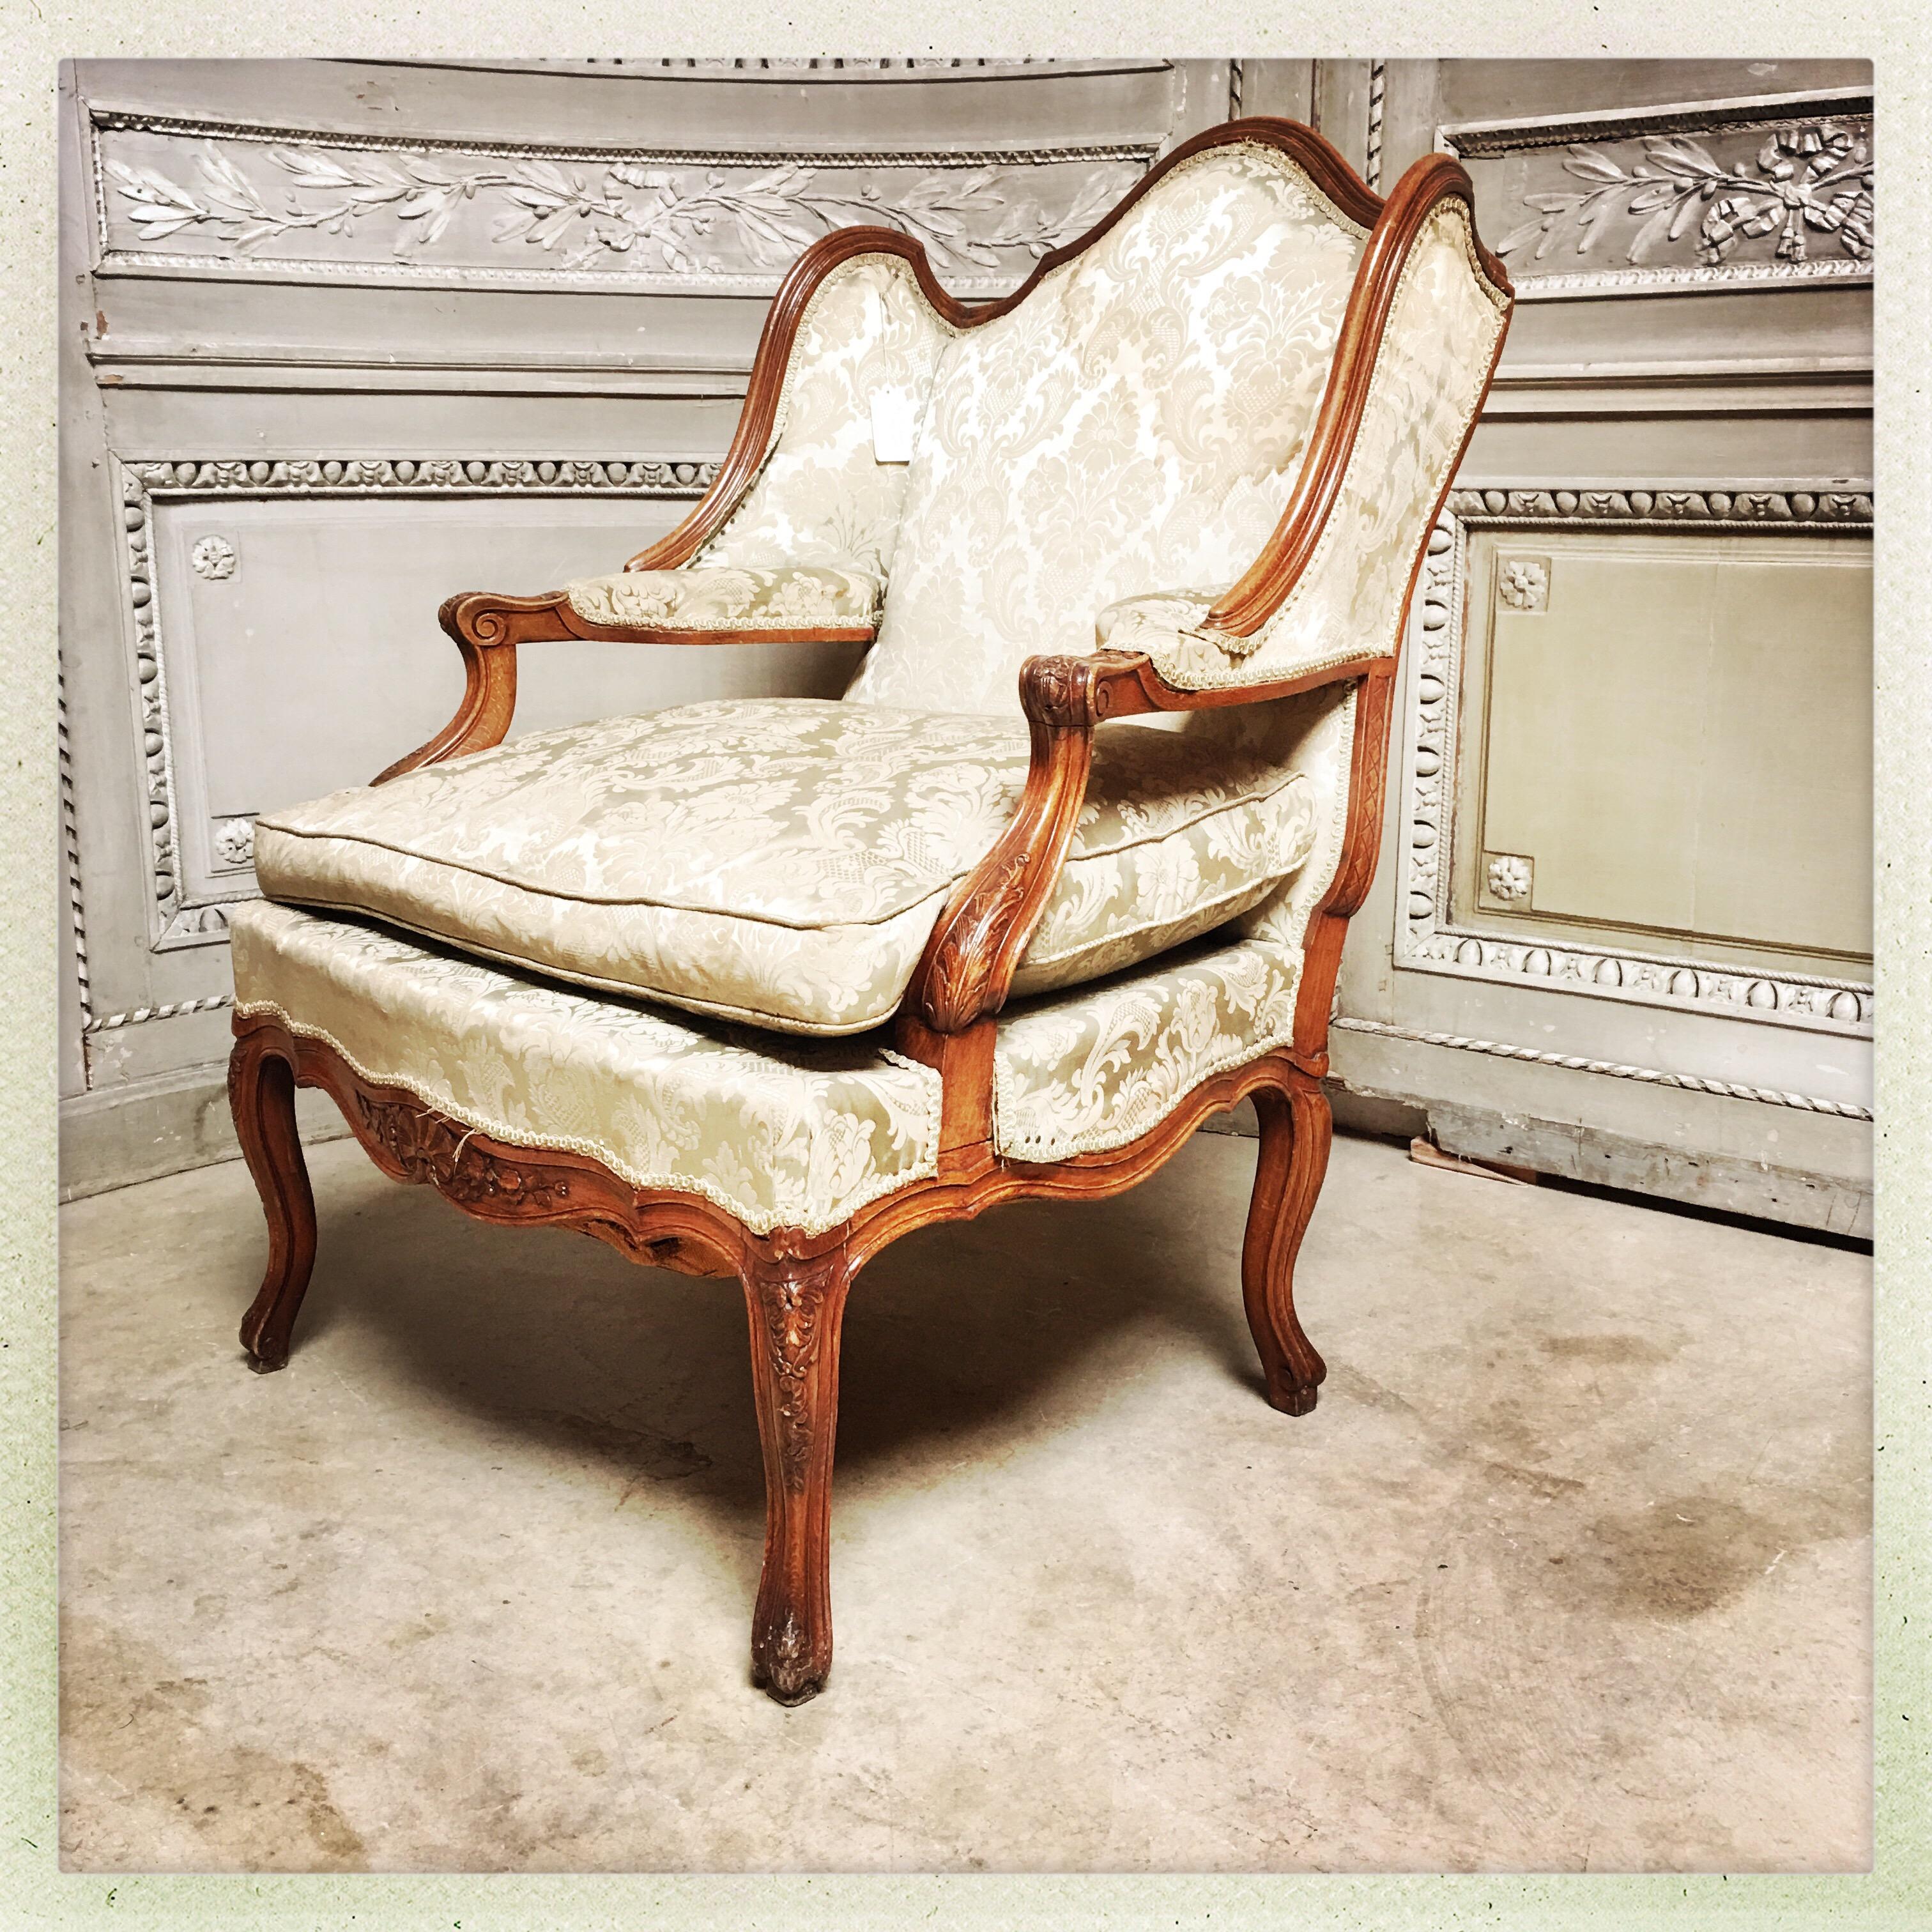 Un grand fauteuil français en noyer sculpté de style Rococo précoce avec des ailes et un accoudoir intérieur. 
Fauteuil en confessionnal en français.